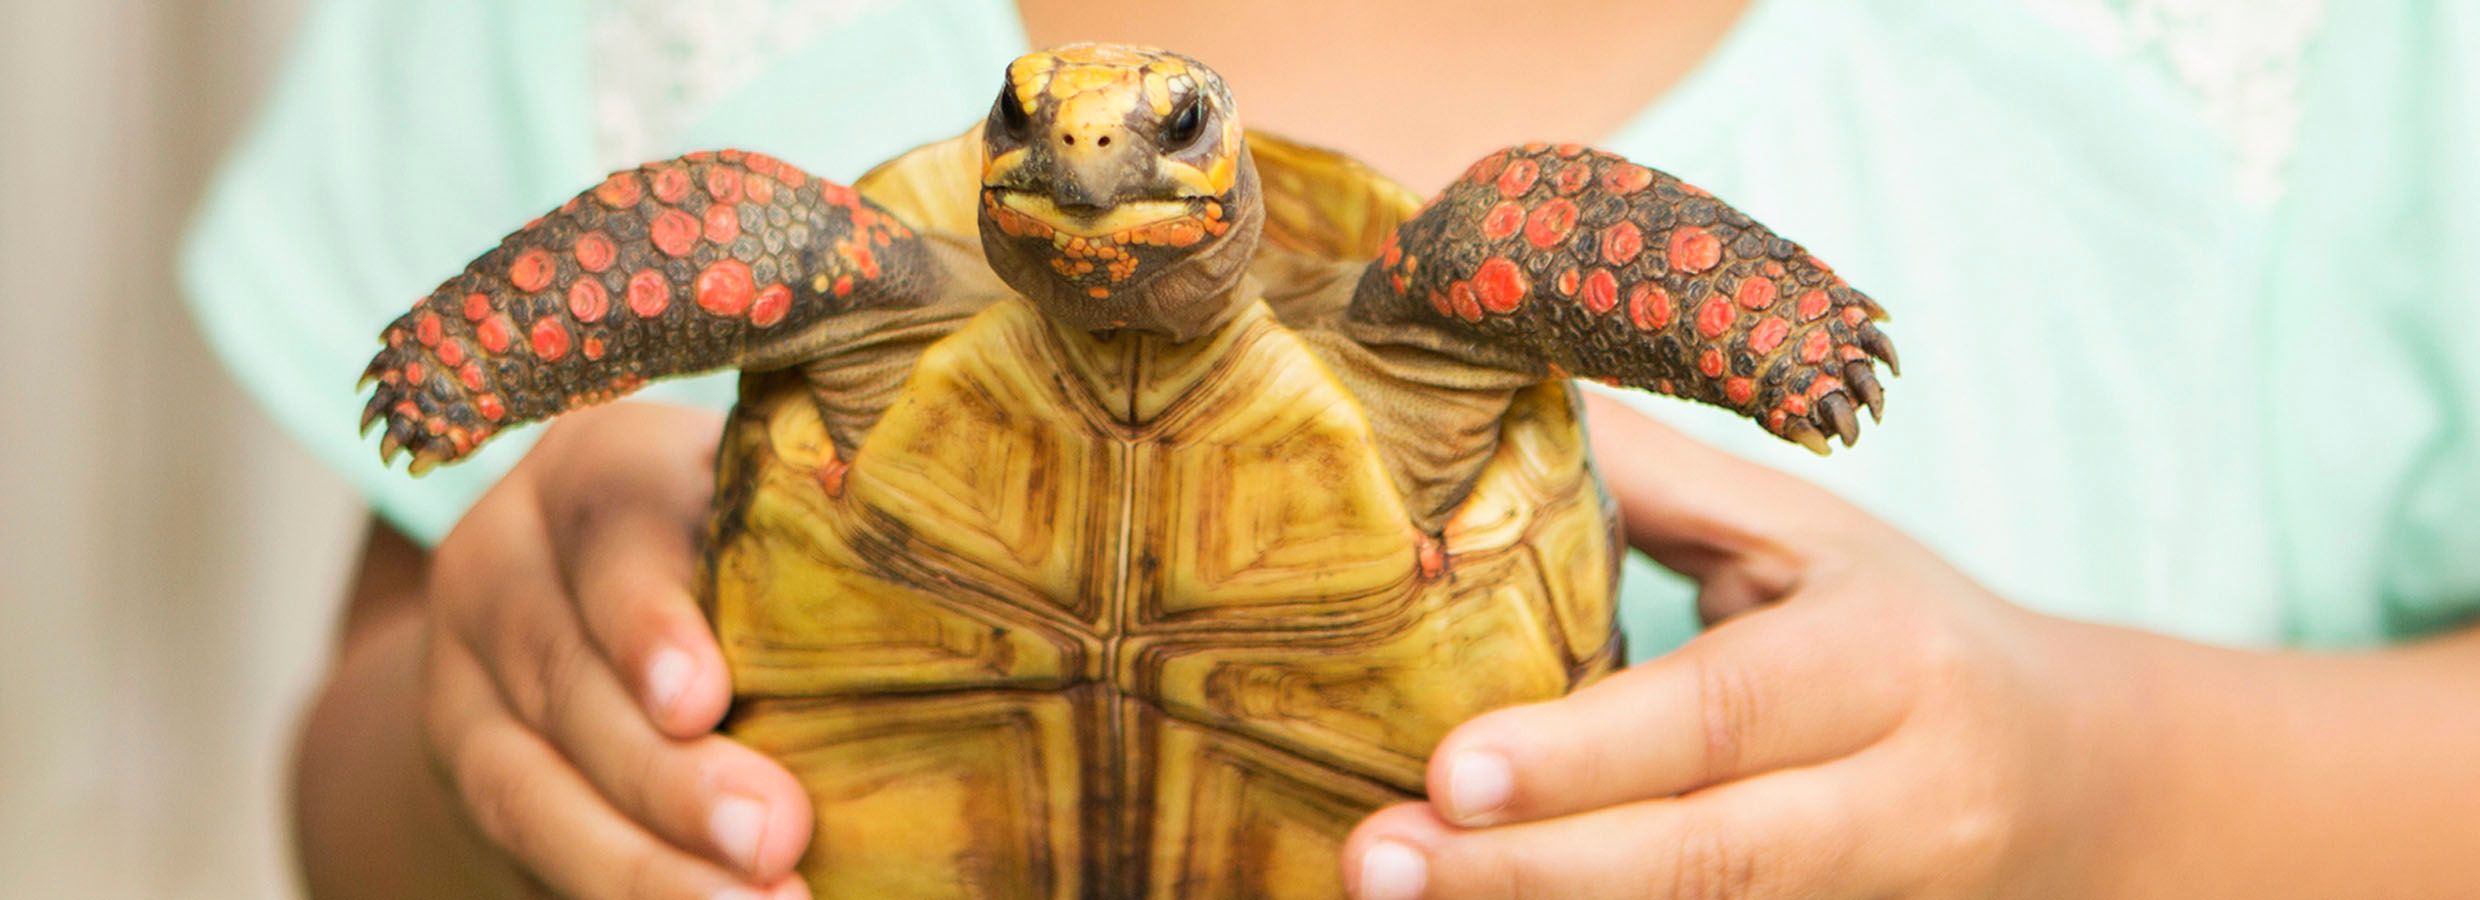 Pet Turtle & Tortoise Supply Checklist